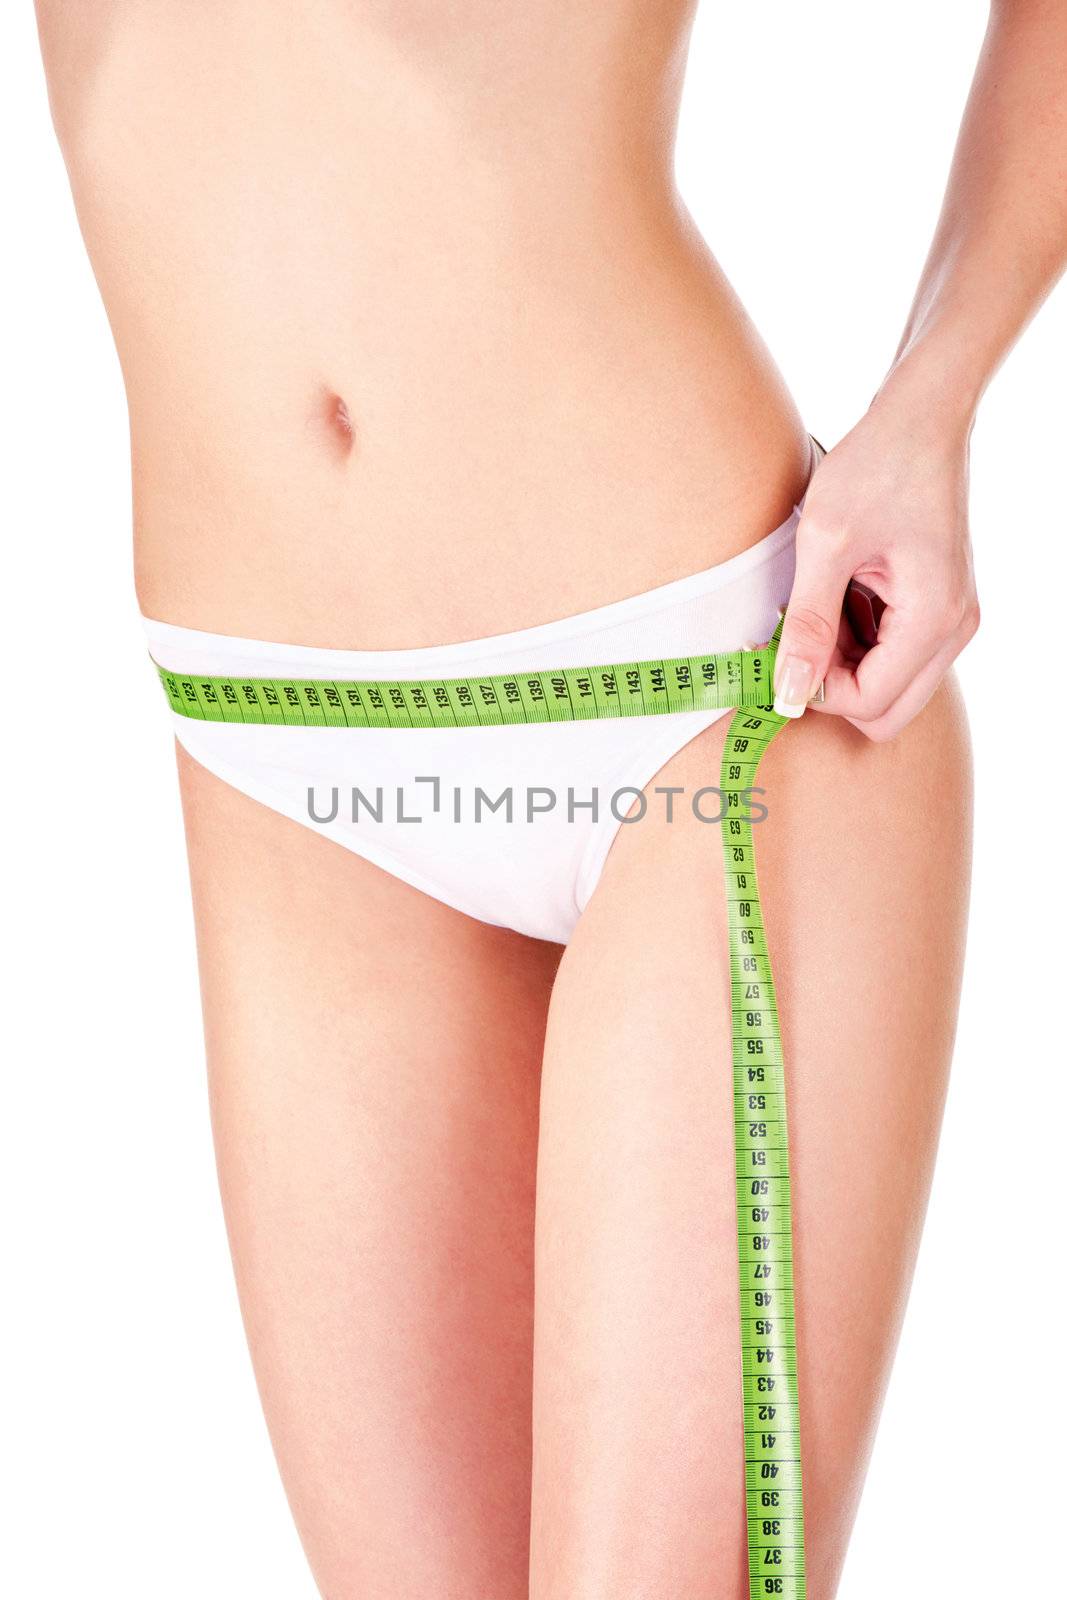 Measure tape around slim woman's hip by imarin